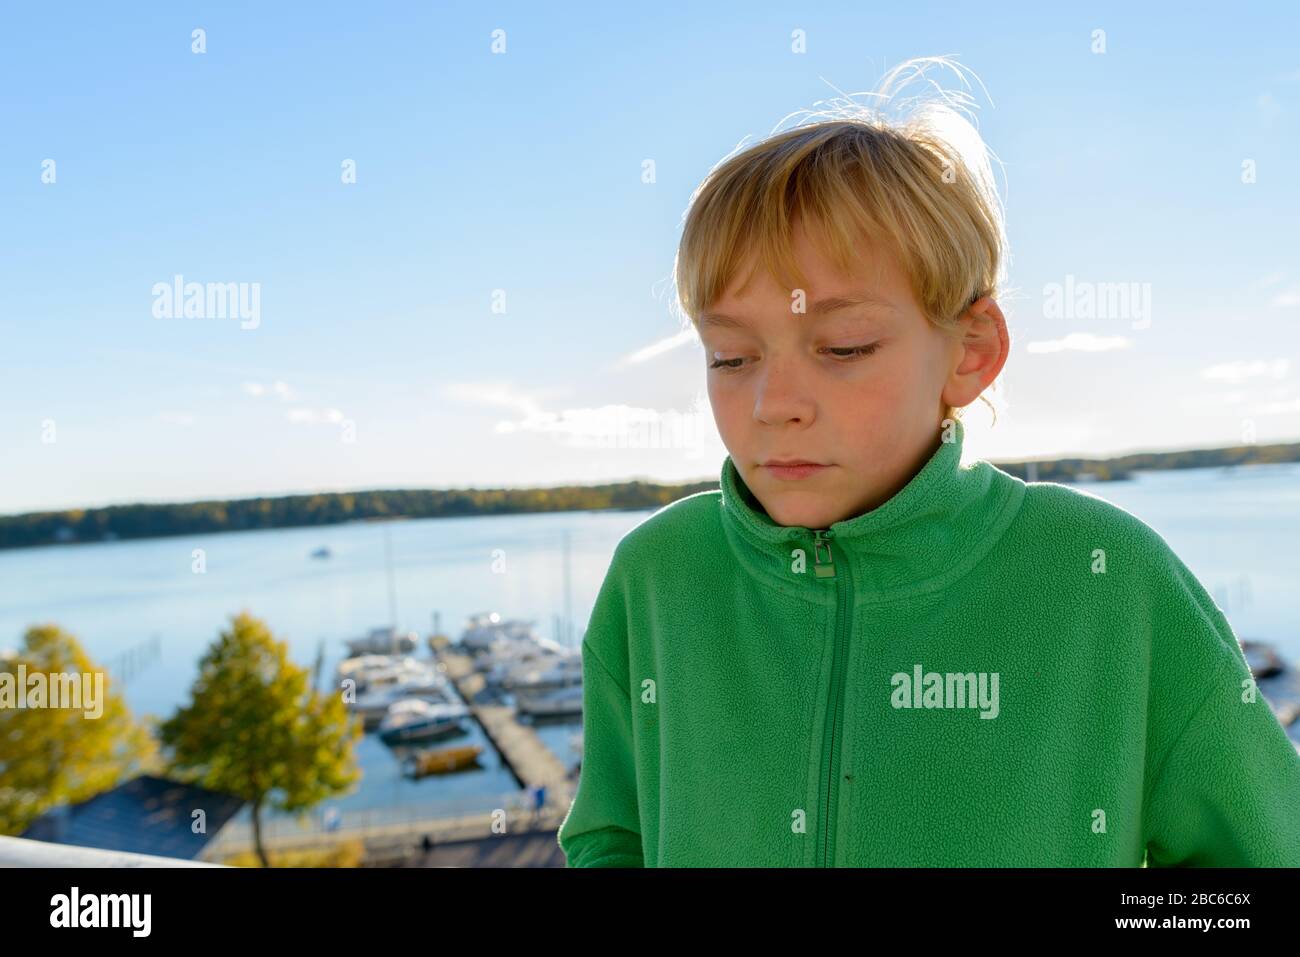 Jeune beau garçon pensant contre la vue de la jetée en bois près de la rivière Banque D'Images